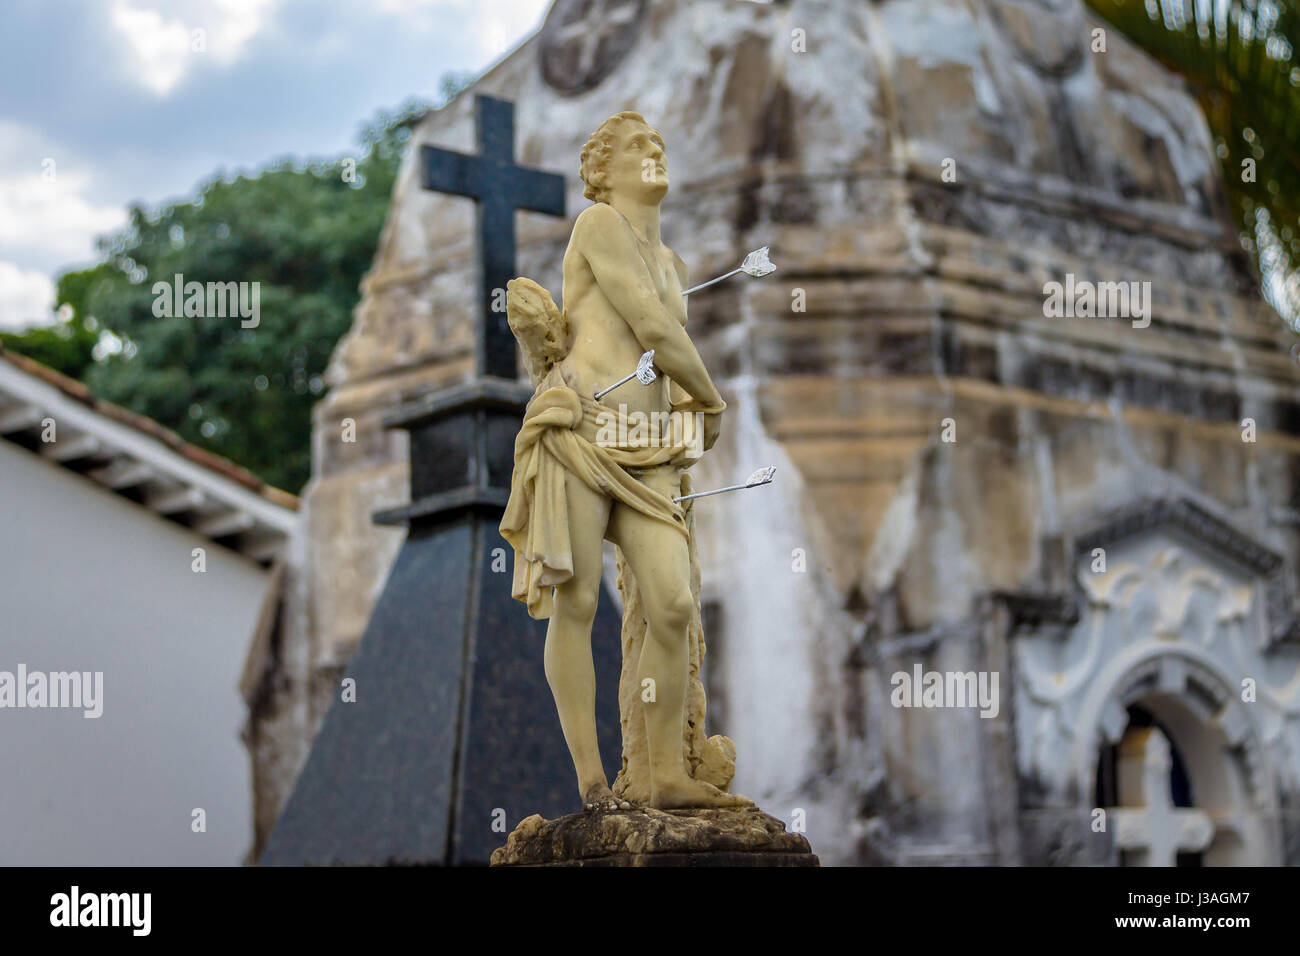 Sculpture at Sao Francisco de Assis Church Cemetery - Sao Joao Del Rei, Minas Gerais, Brazil Stock Photo